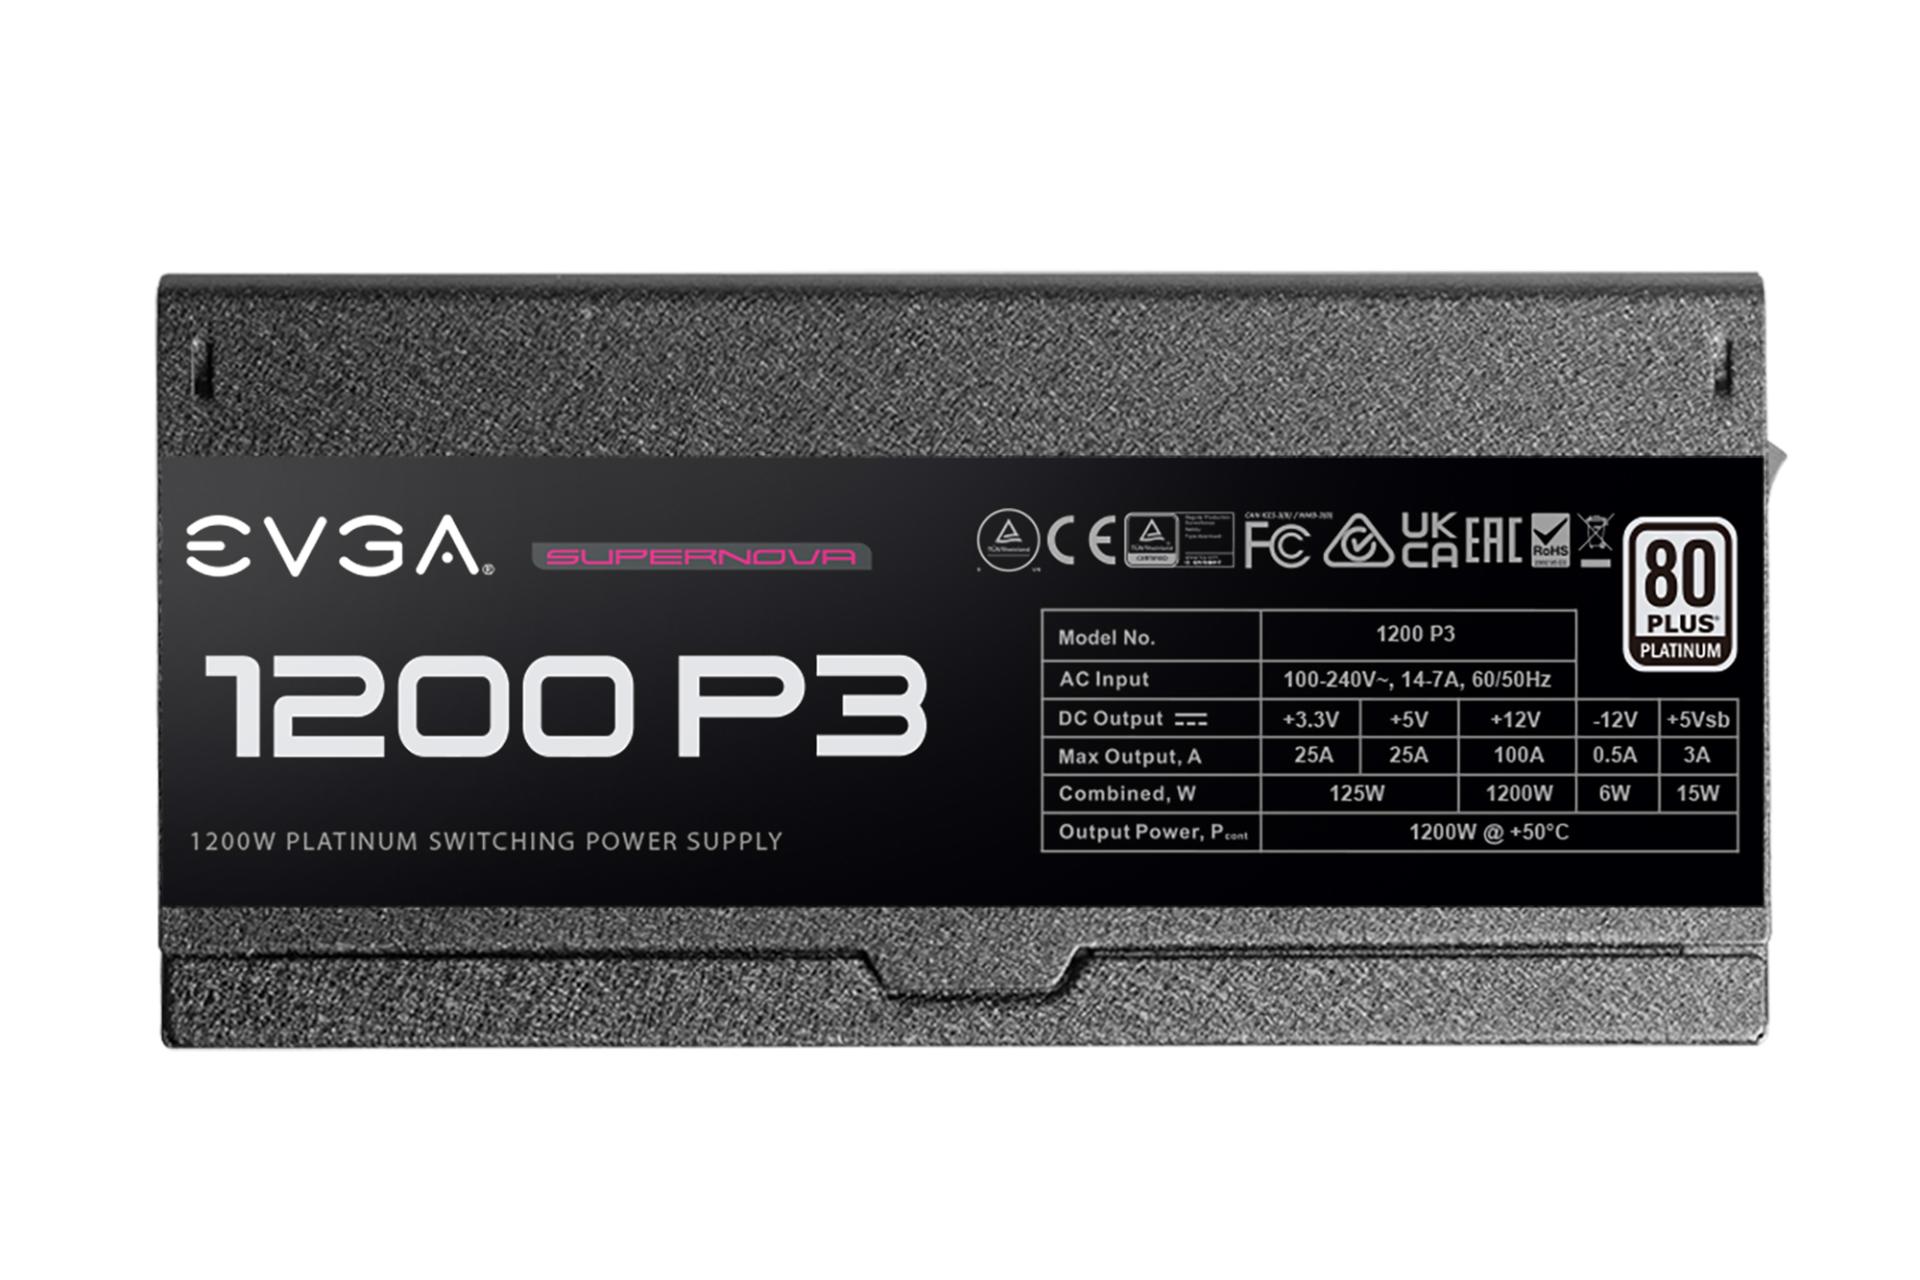 پاور کامپیوتر ای وی جی ای EVGA SuperNOVA 1200 P3 با توان 1200 وات نمای کنار